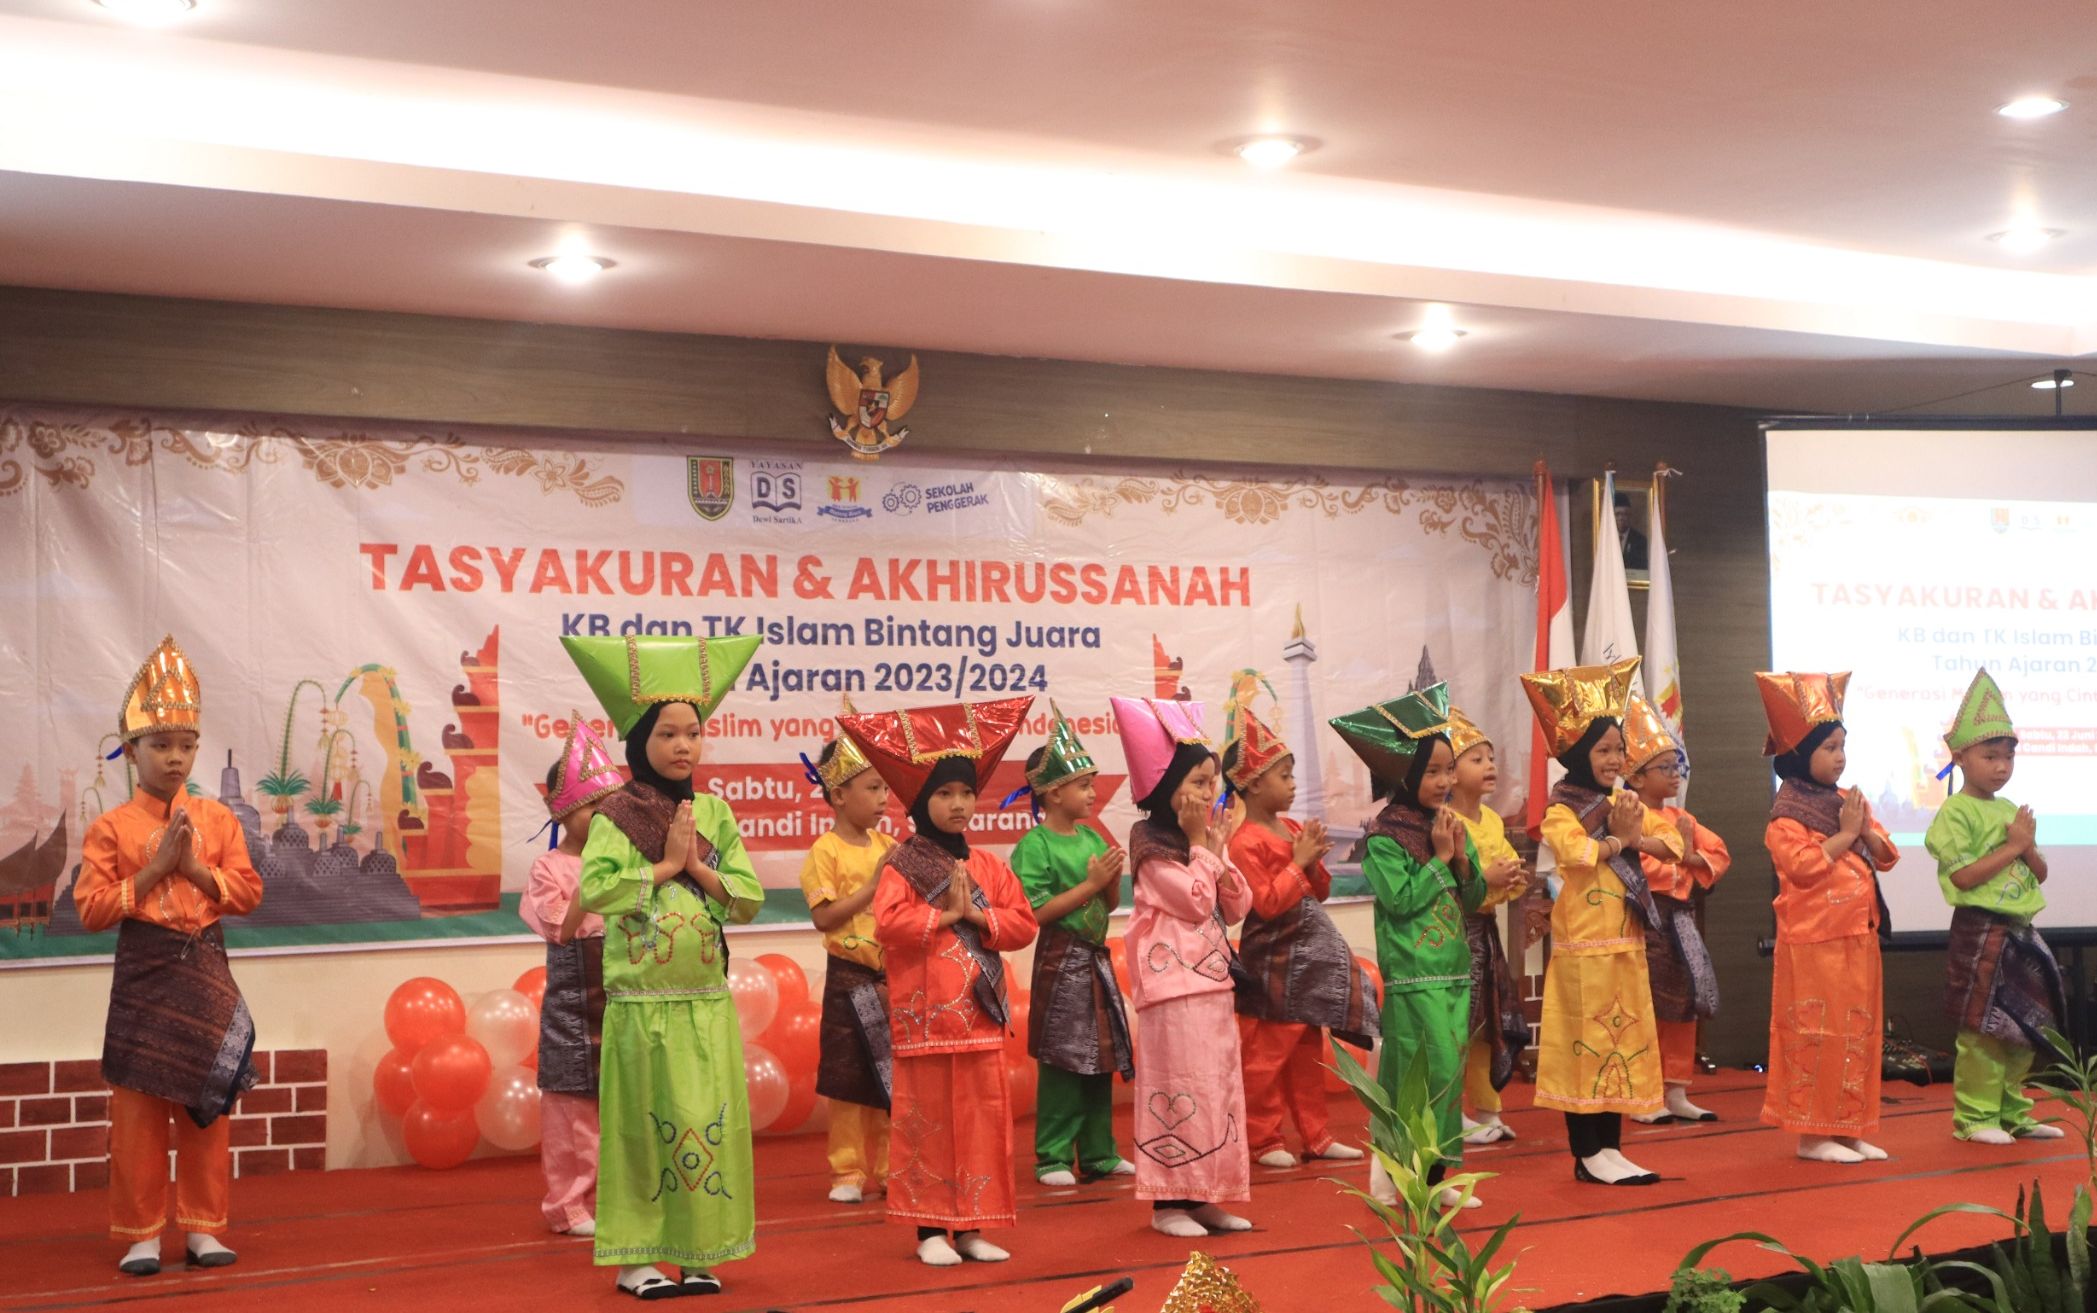 Tasyakuran dan Akhirussanah KB TK Bintang Juara tema Generasi Muslim Yang Cinta Budaya Indonesia.